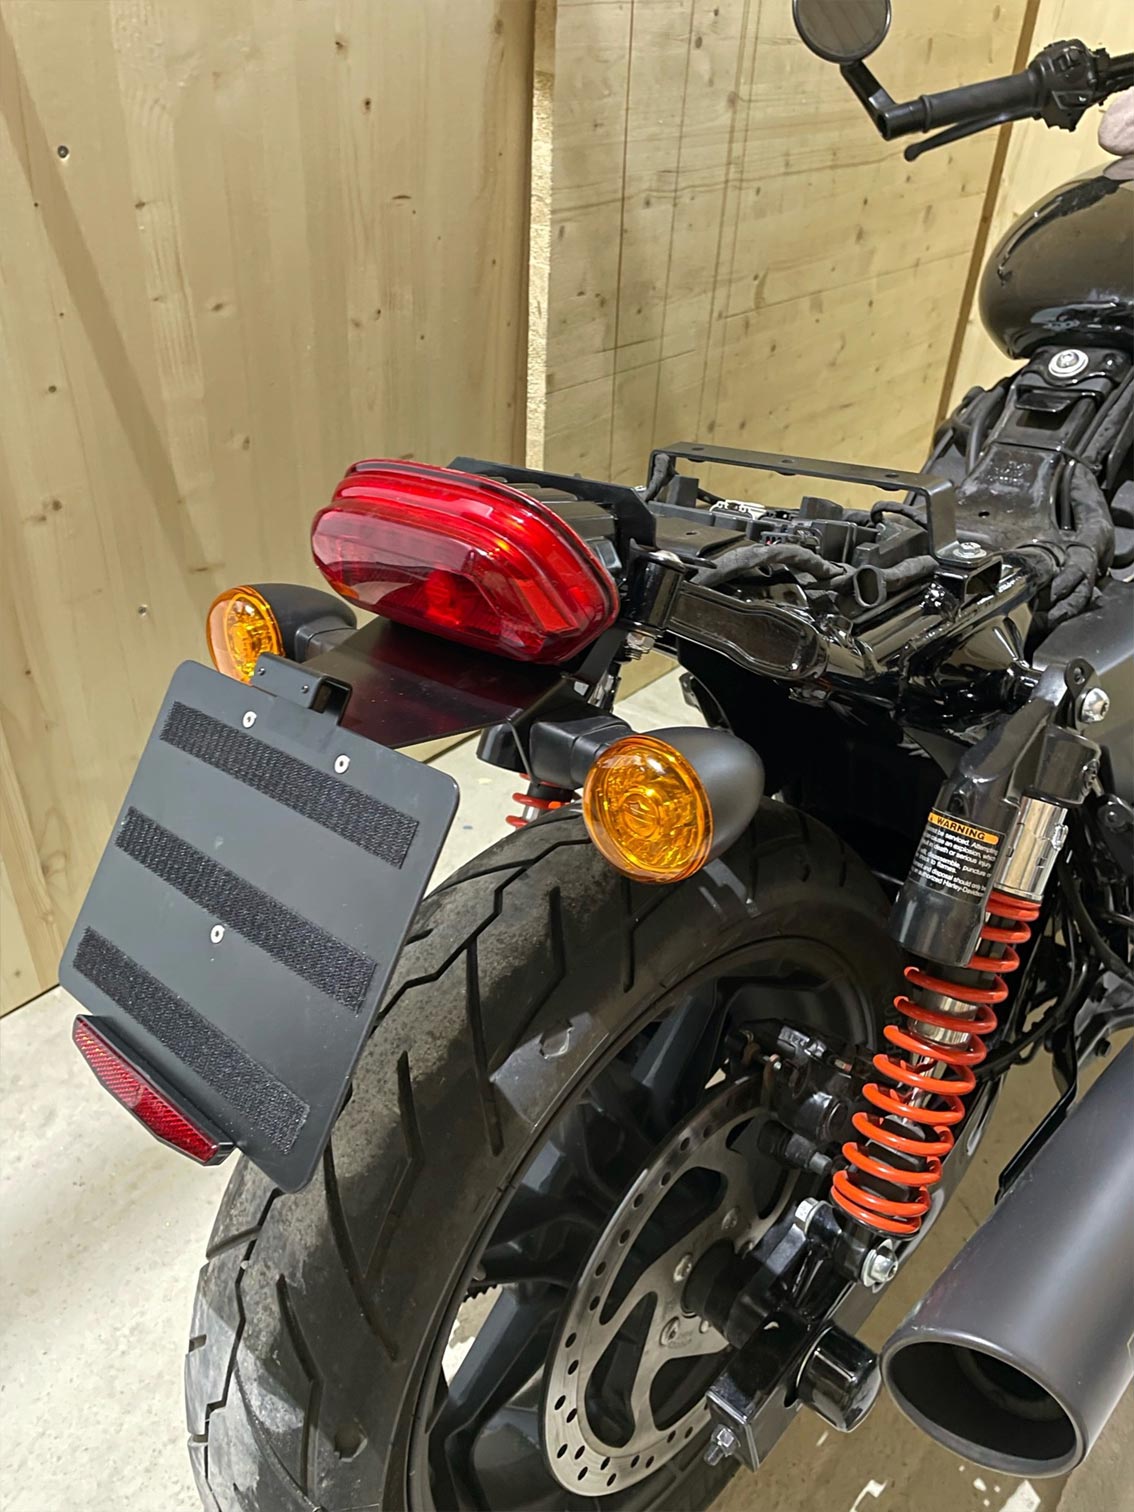 Harley Davidson Street Rod - Fender Eliminator Kit - customer photo - central license plate holder for original turn signals